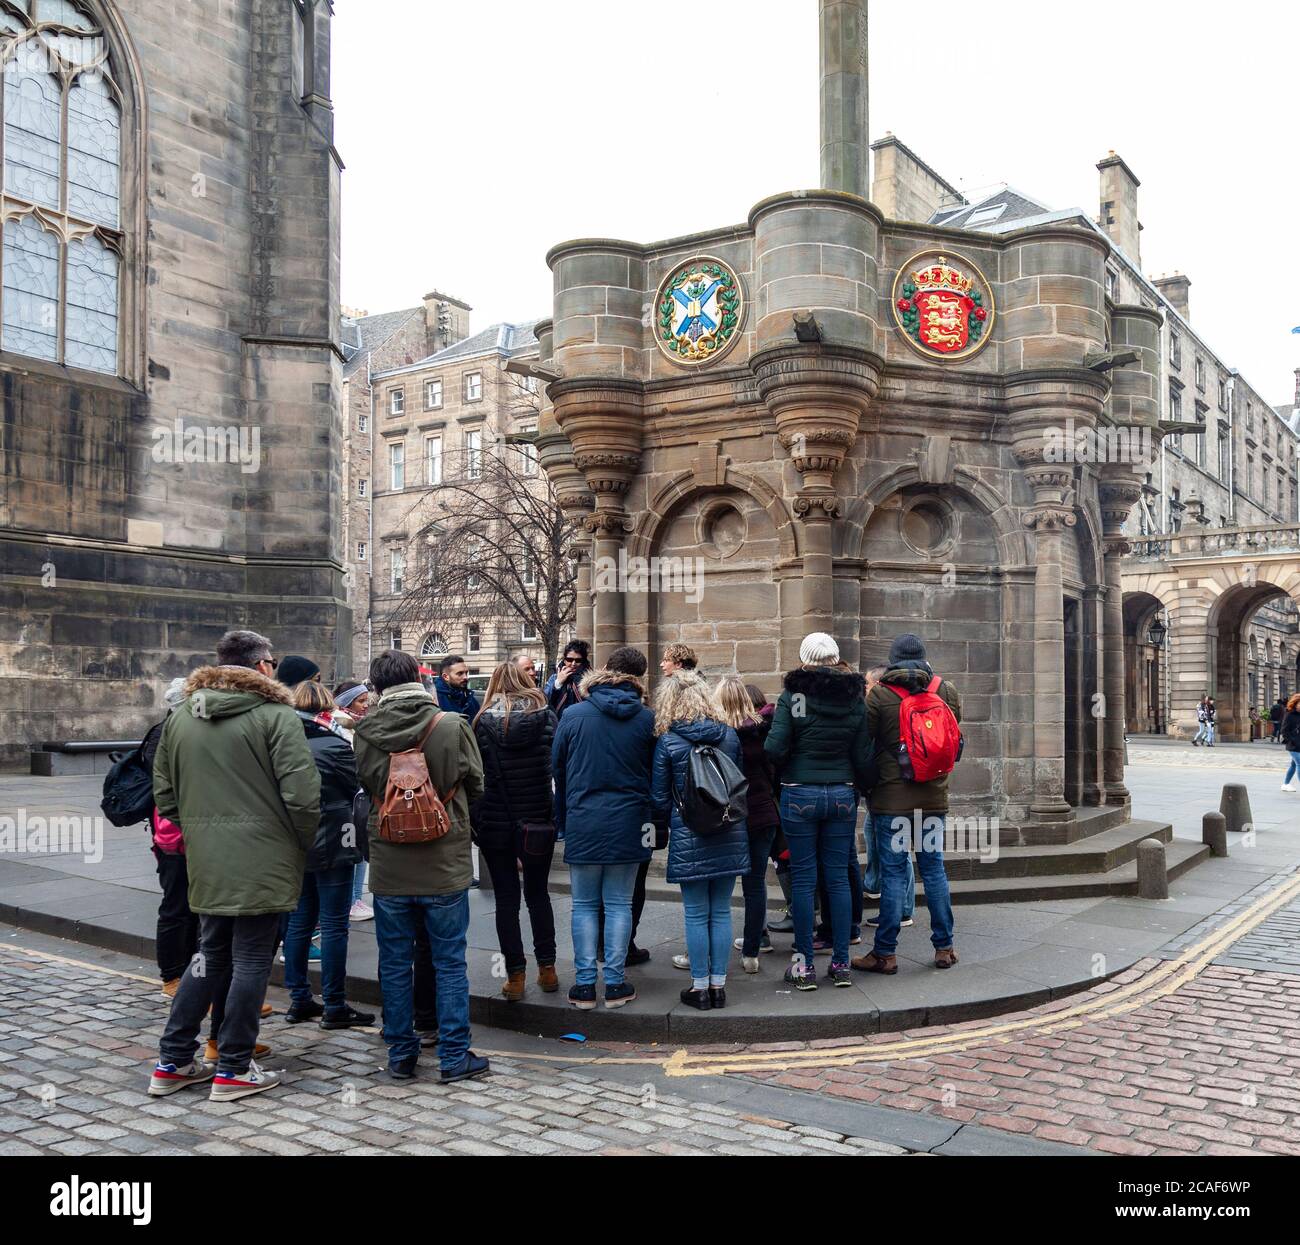 Eine Reisegruppe, die ihrem Fremdenführer vor dem Mercat Cross neben der St Giles Cathedral in der Royal Mile / High Street, Edinburgh, Schottland, Großbritannien zuhört Stockfoto